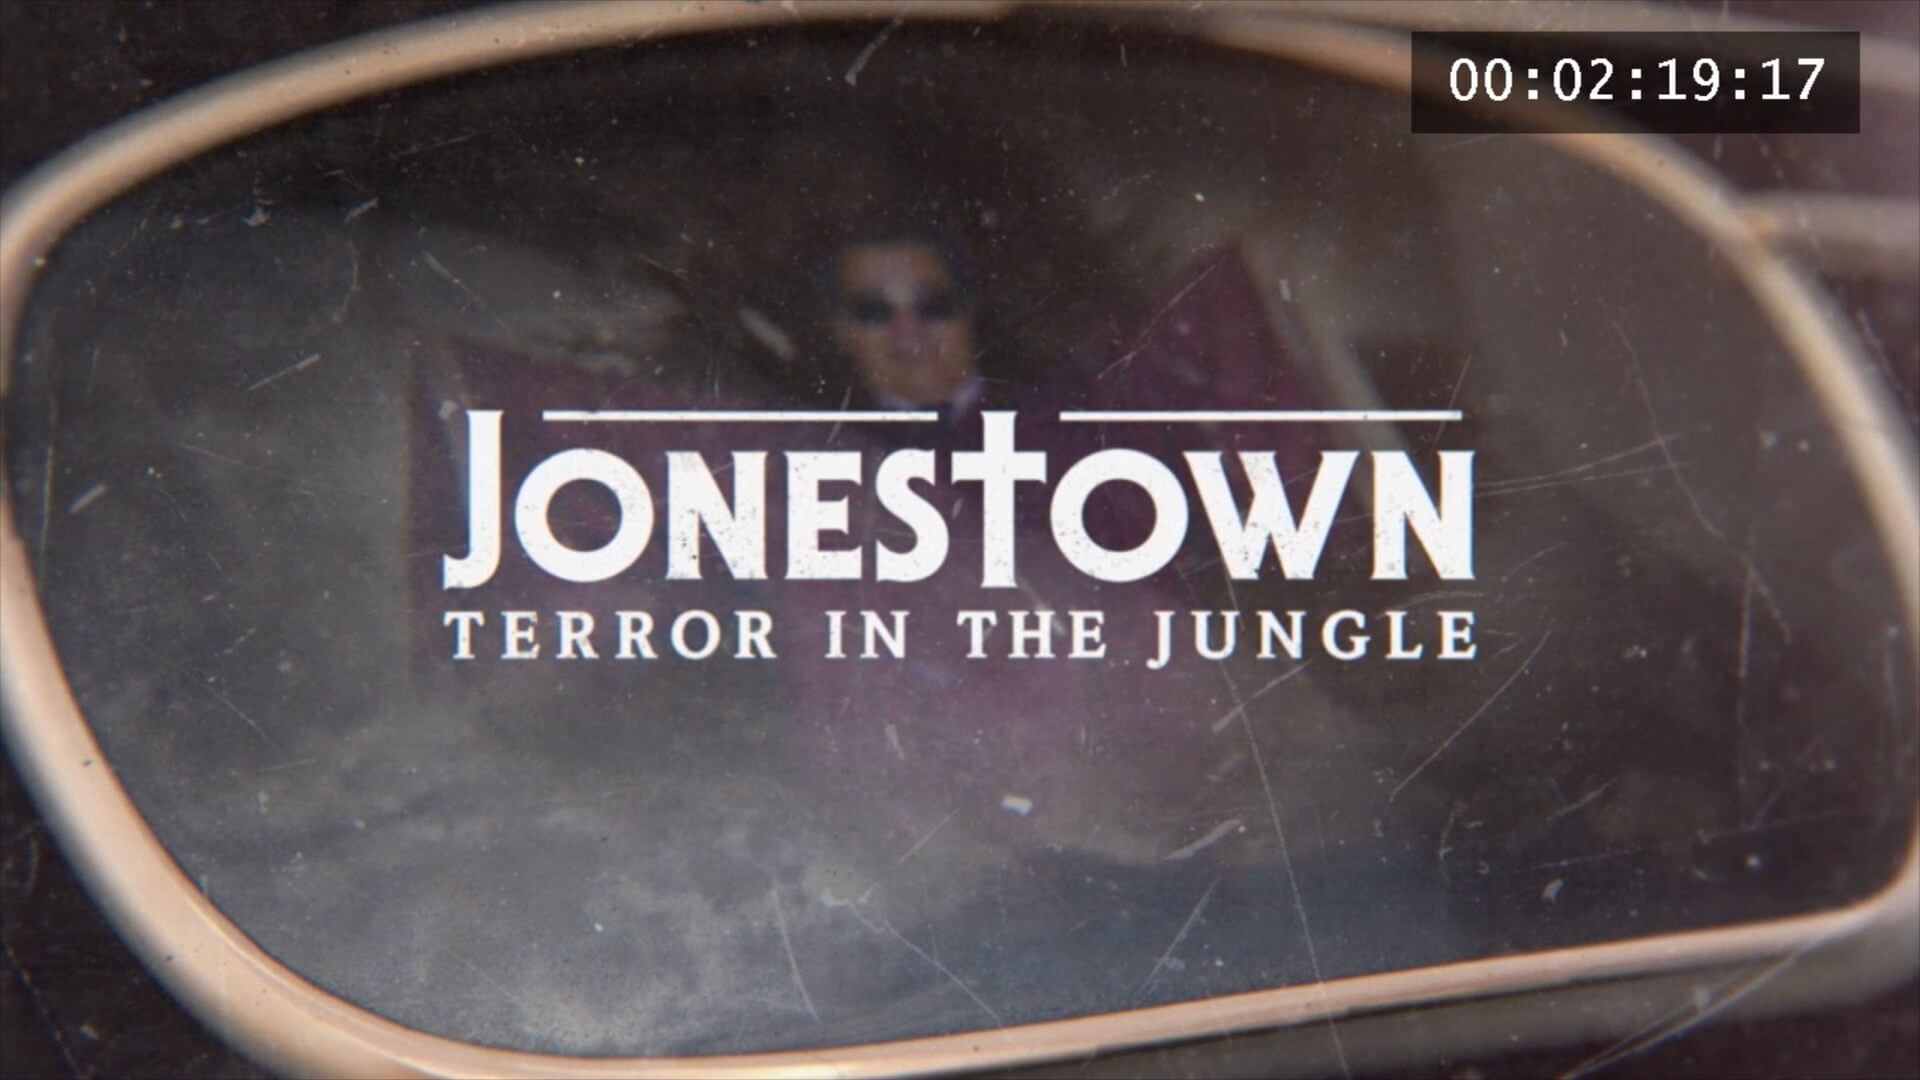 Übersetzung und Synchronisation der Dokumentation Jonestown